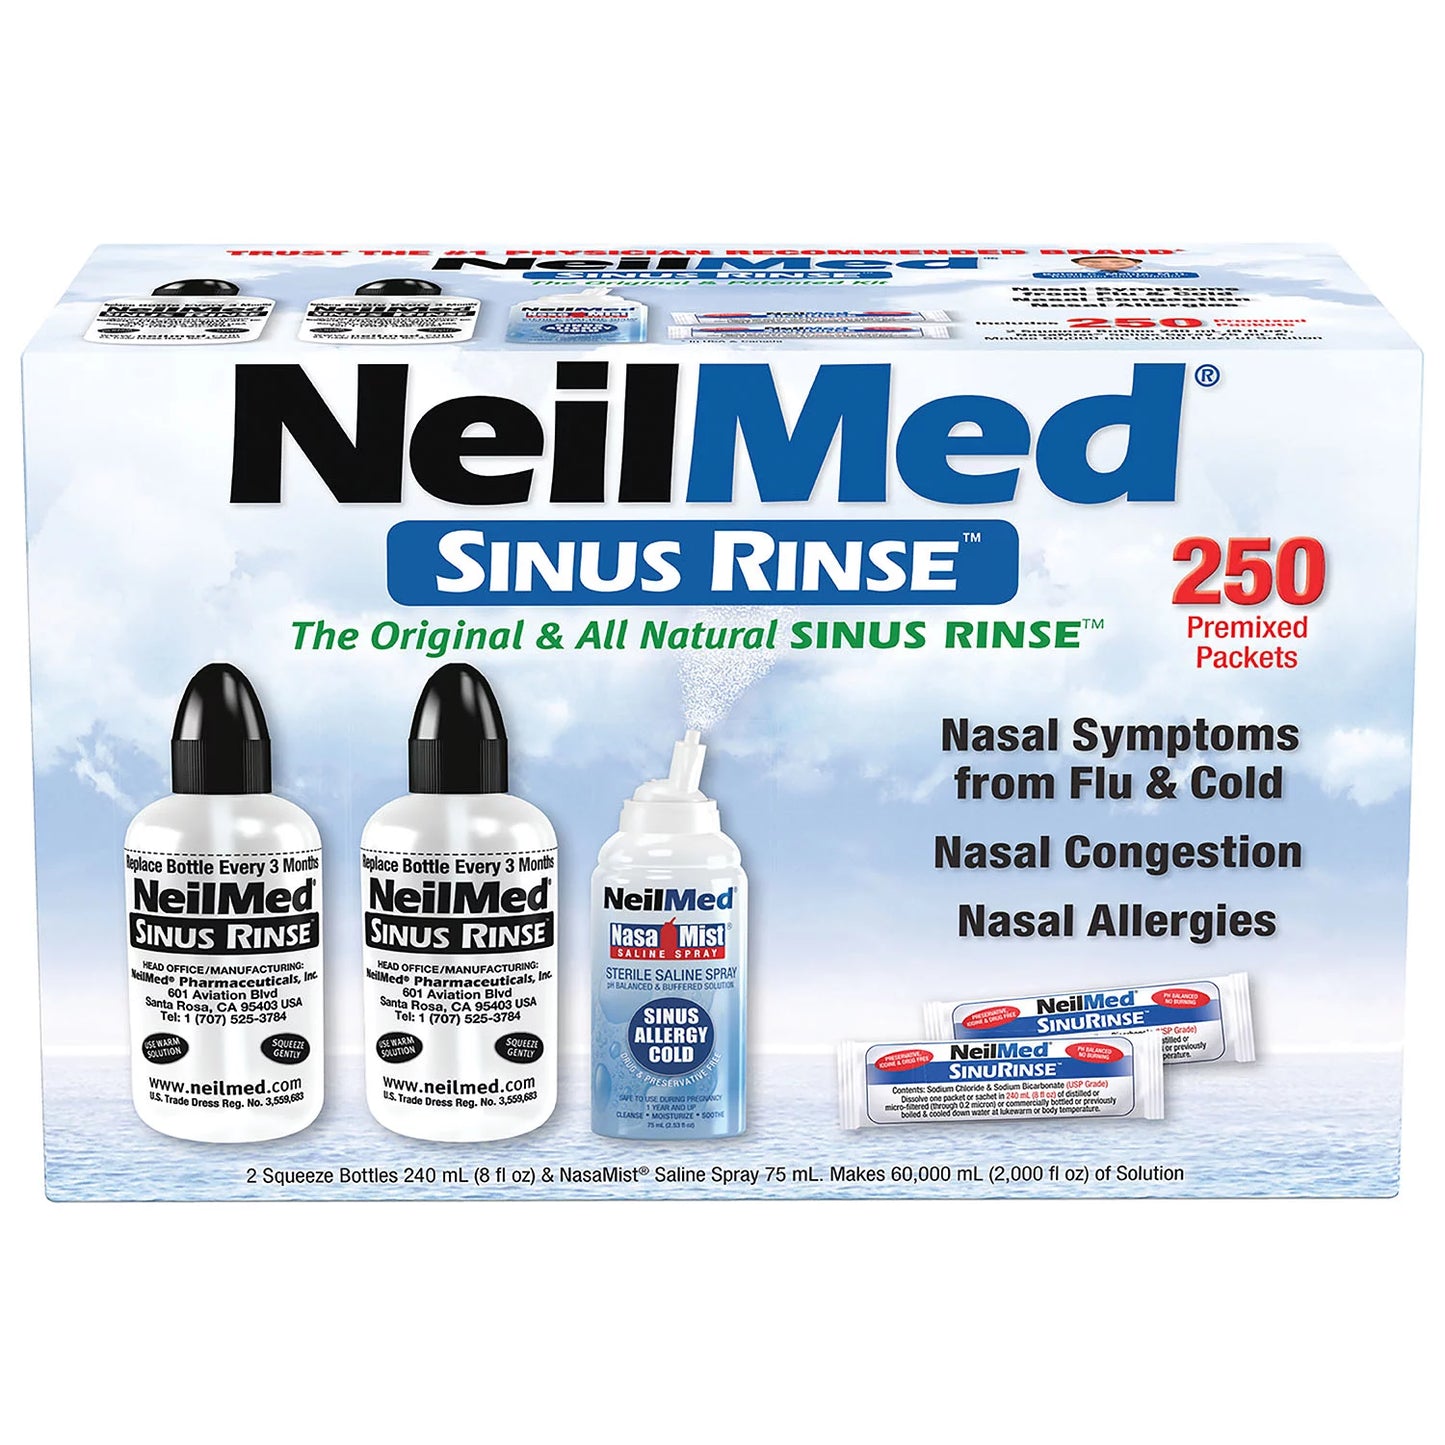 NeilMed Sinus Rinse Kit 250 Premixed Packets